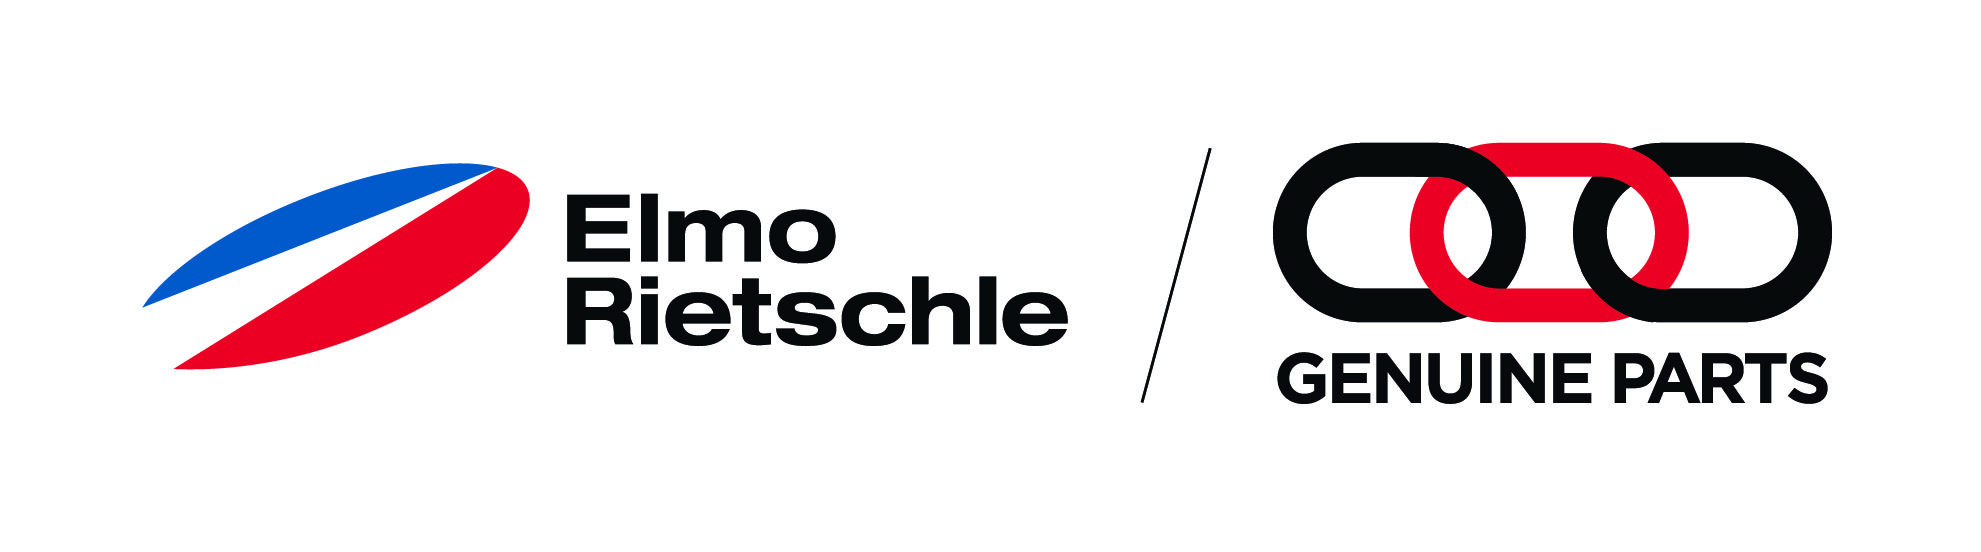 Elmo Rietschle Genuine Parts logotyp